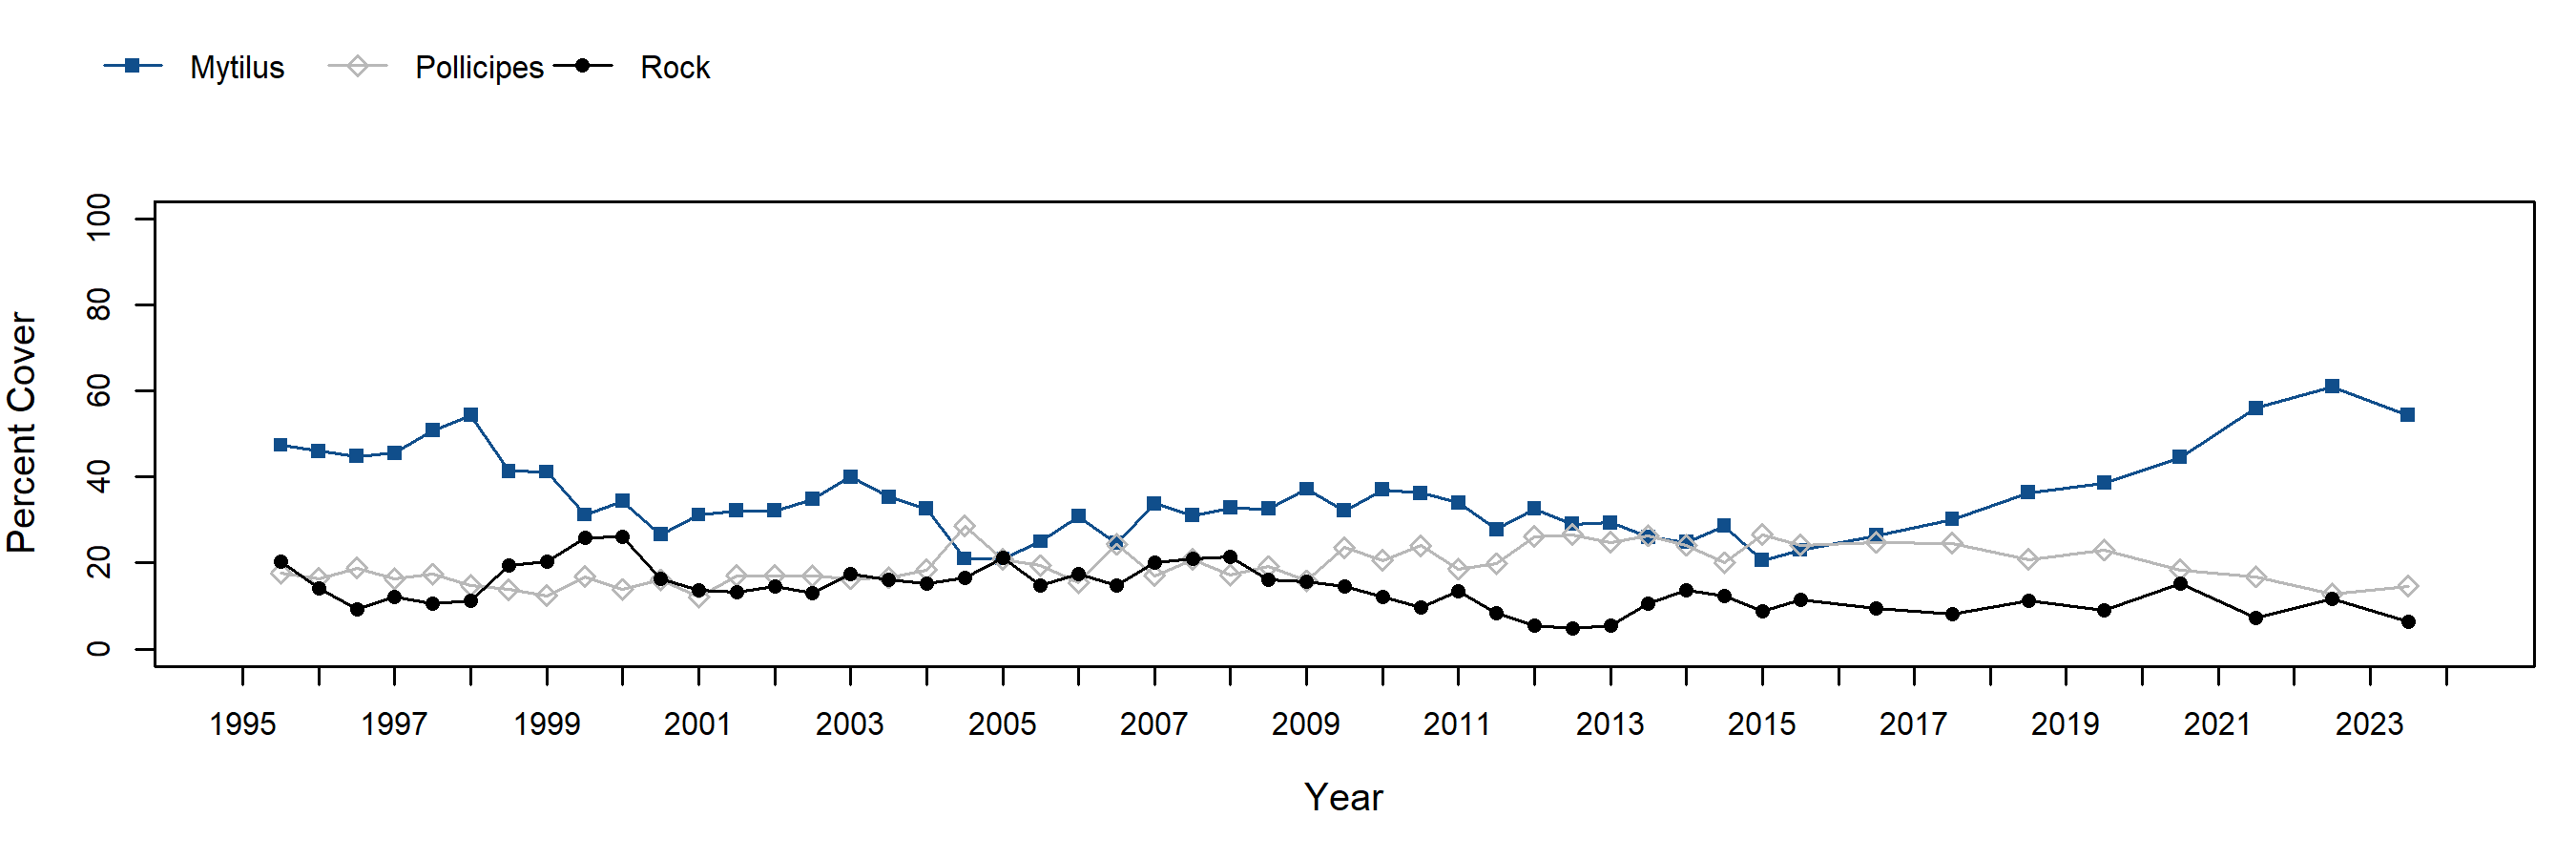 Hazards Mytilus trend plot